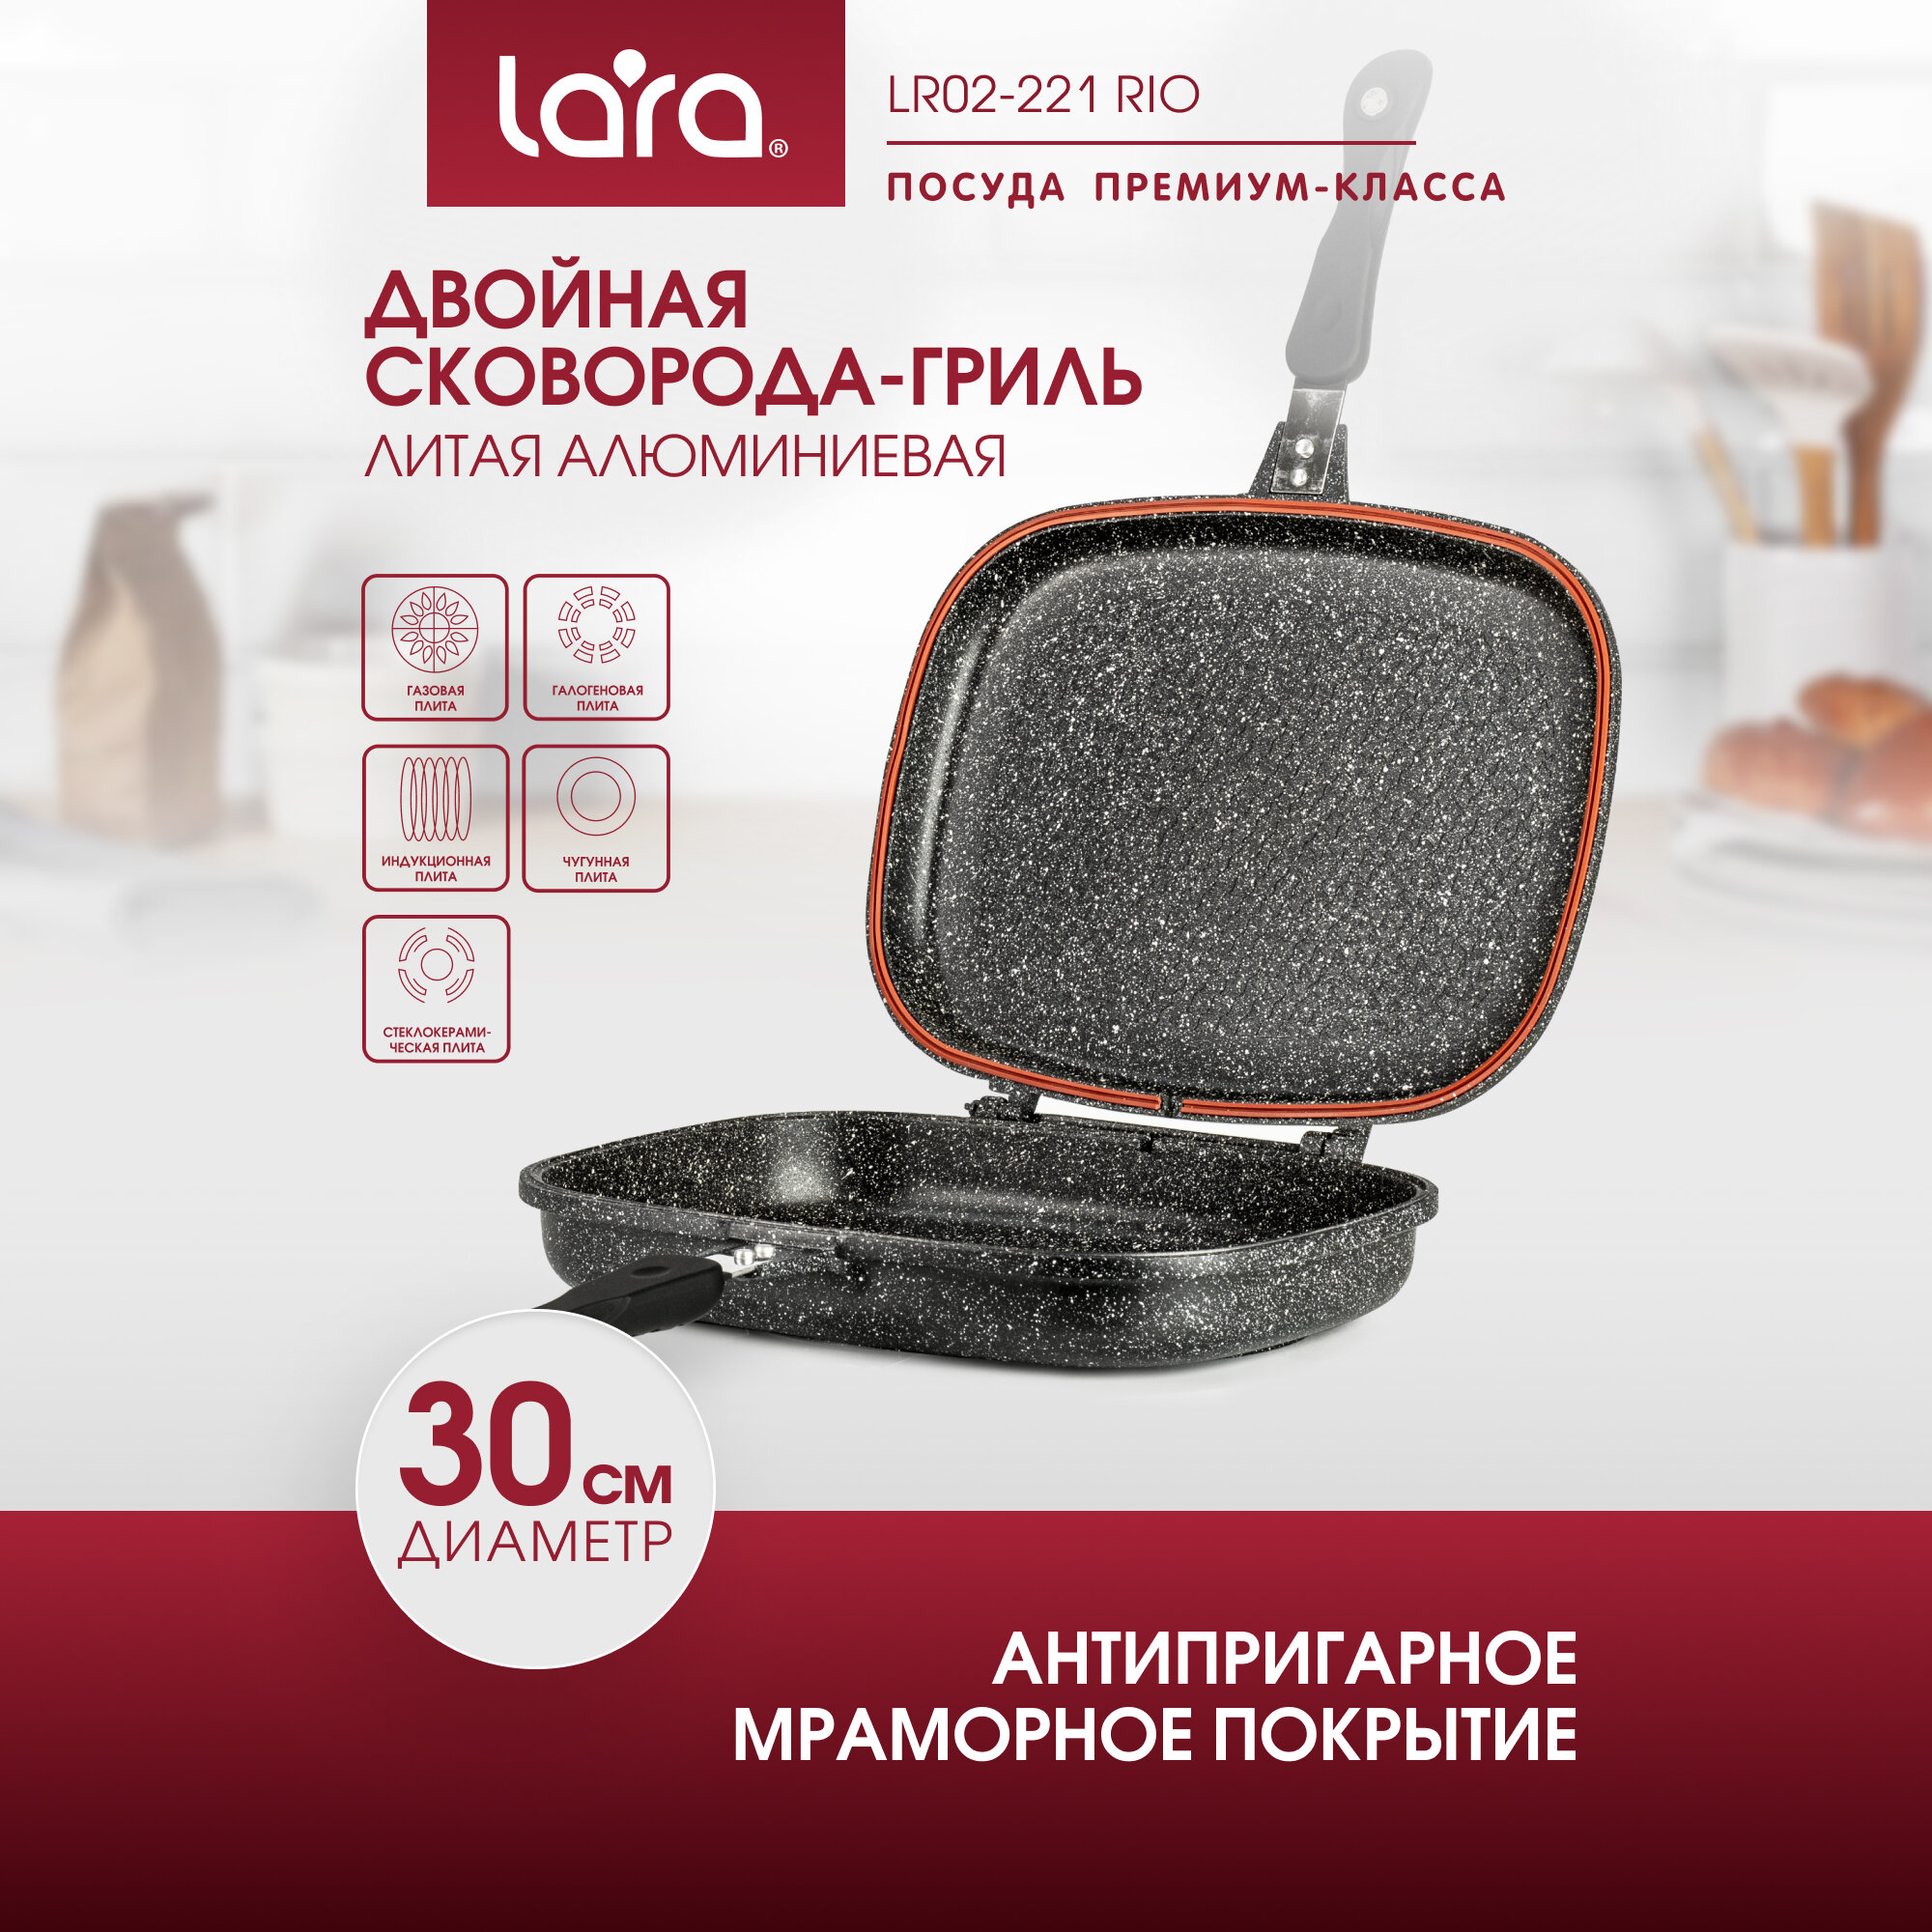 Сковорода-гриль LARA LR02-221 Rio, d30 см, алюминиевая , 3-слойное мраморное покрытие